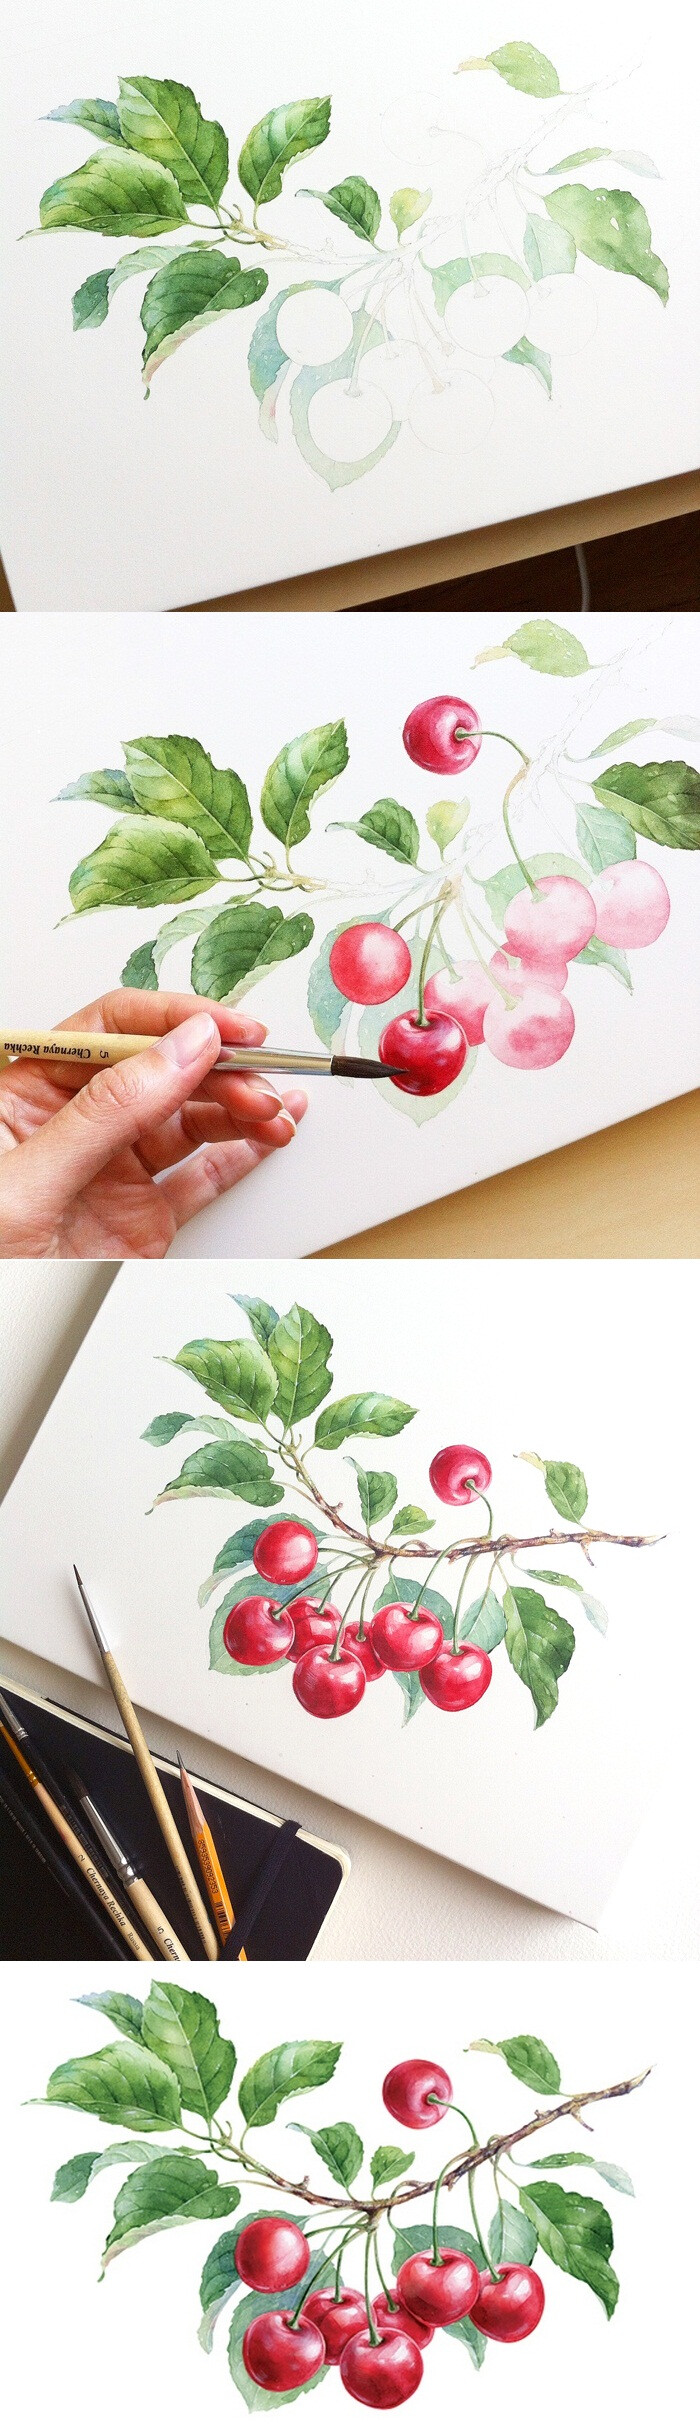 樱桃 水彩 绘画教程 俄罗斯艺术家Natalia Tyulkina